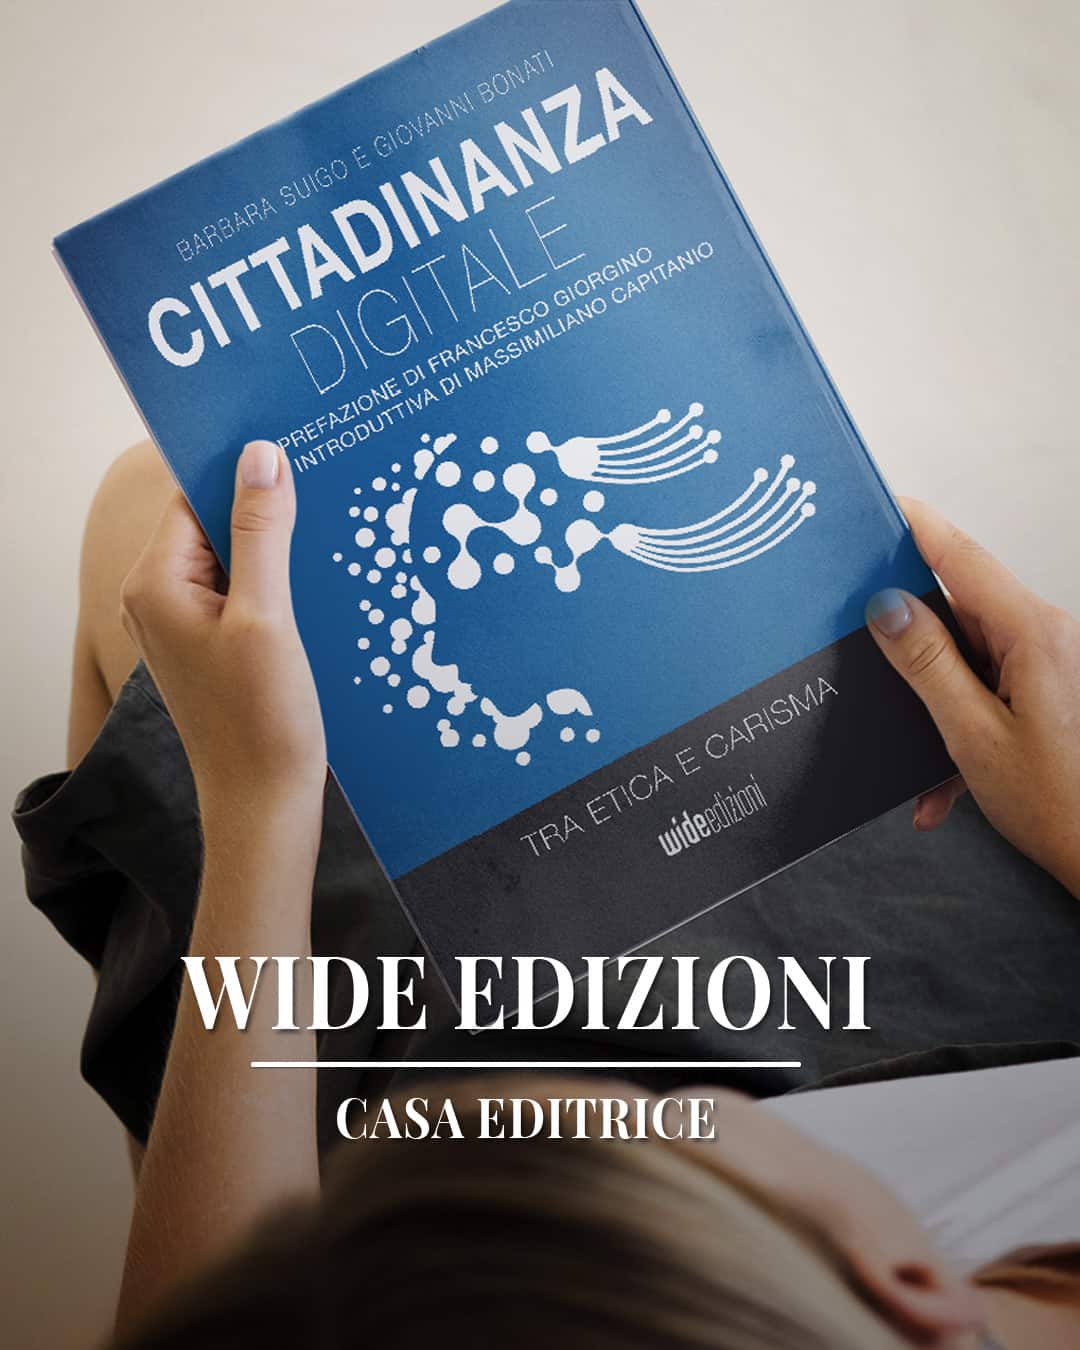 Cittadinanza digitale - Tra etica e carisma